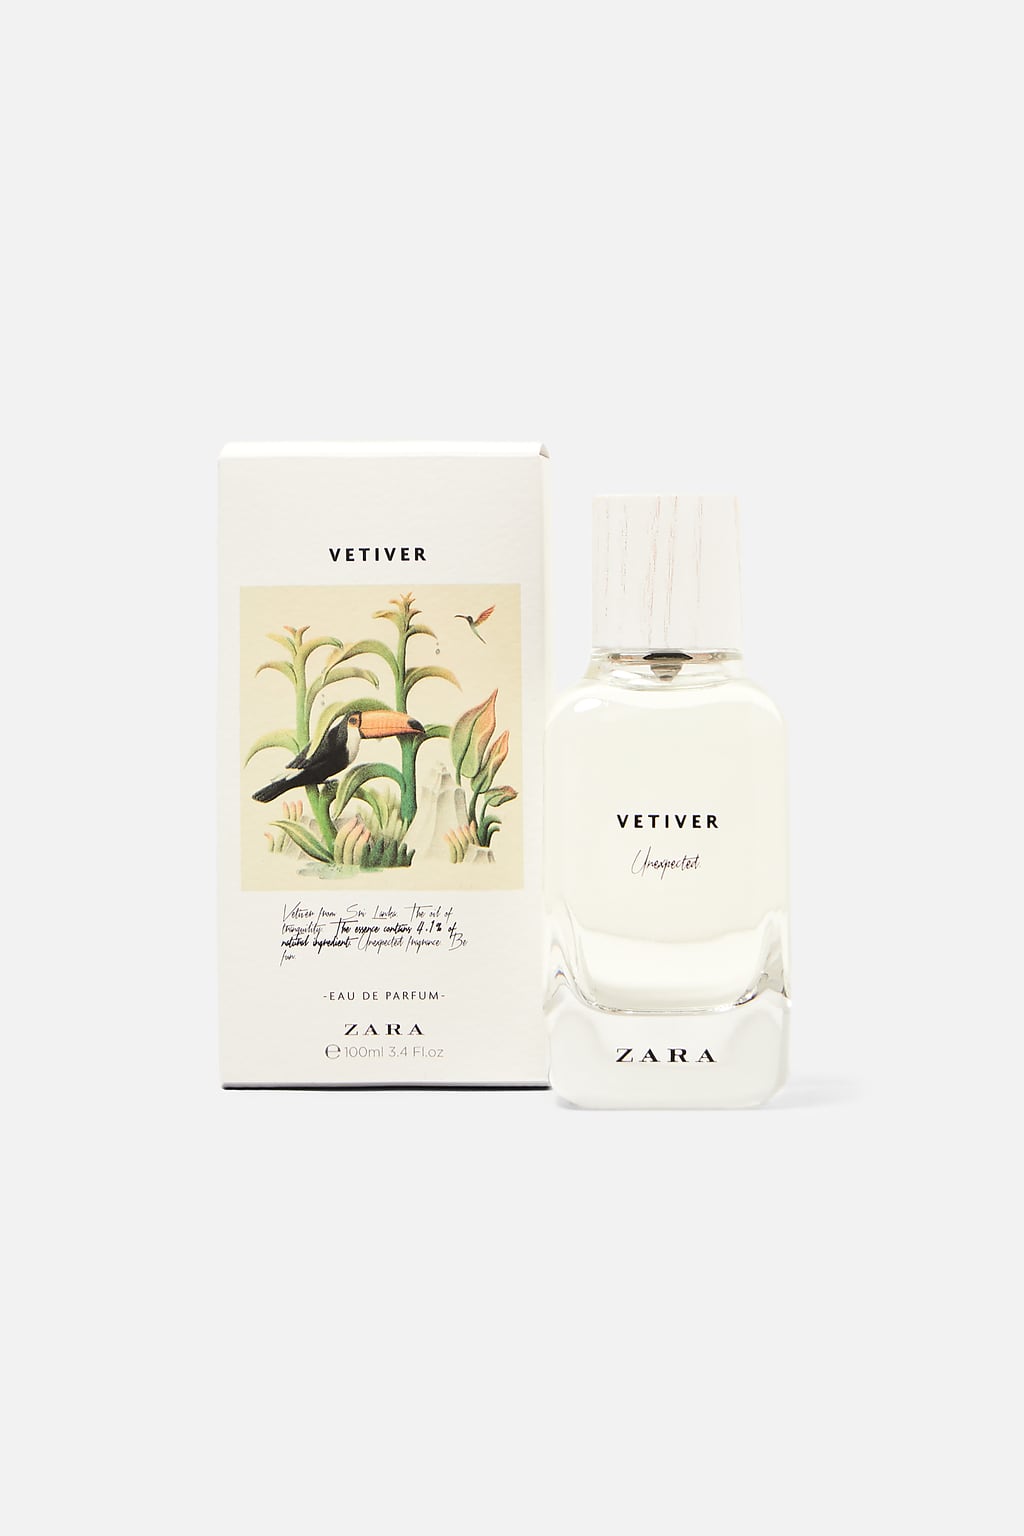 Vetiver - Unexpected Zara perfume - a 